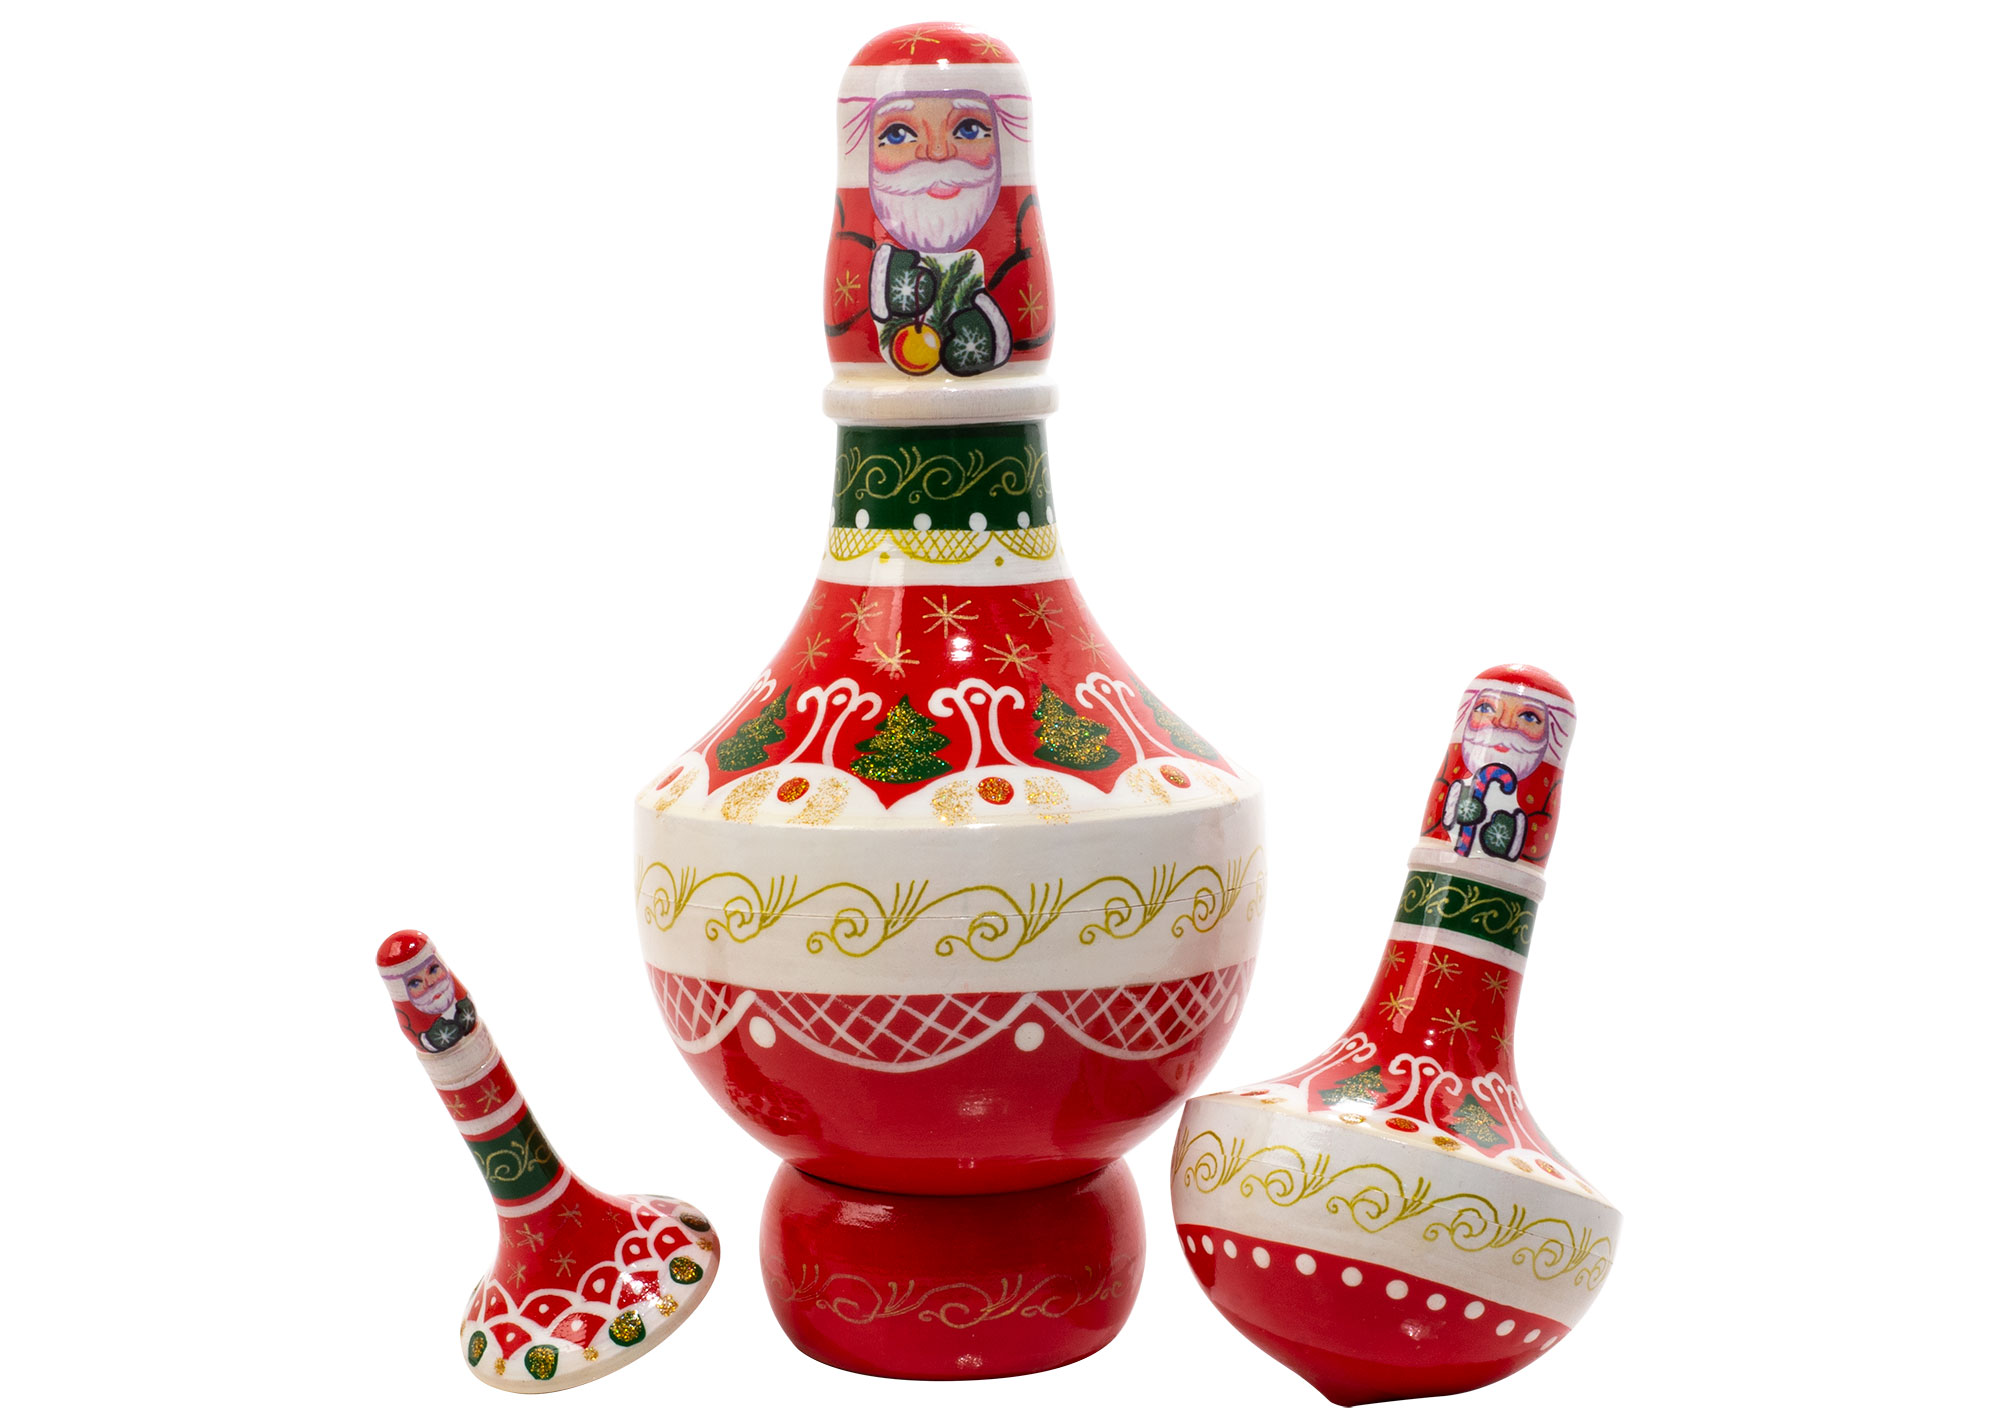 Buy Матрешка «Рождественский волчок» 3 места 12,5 см at GoldenCockerel.com